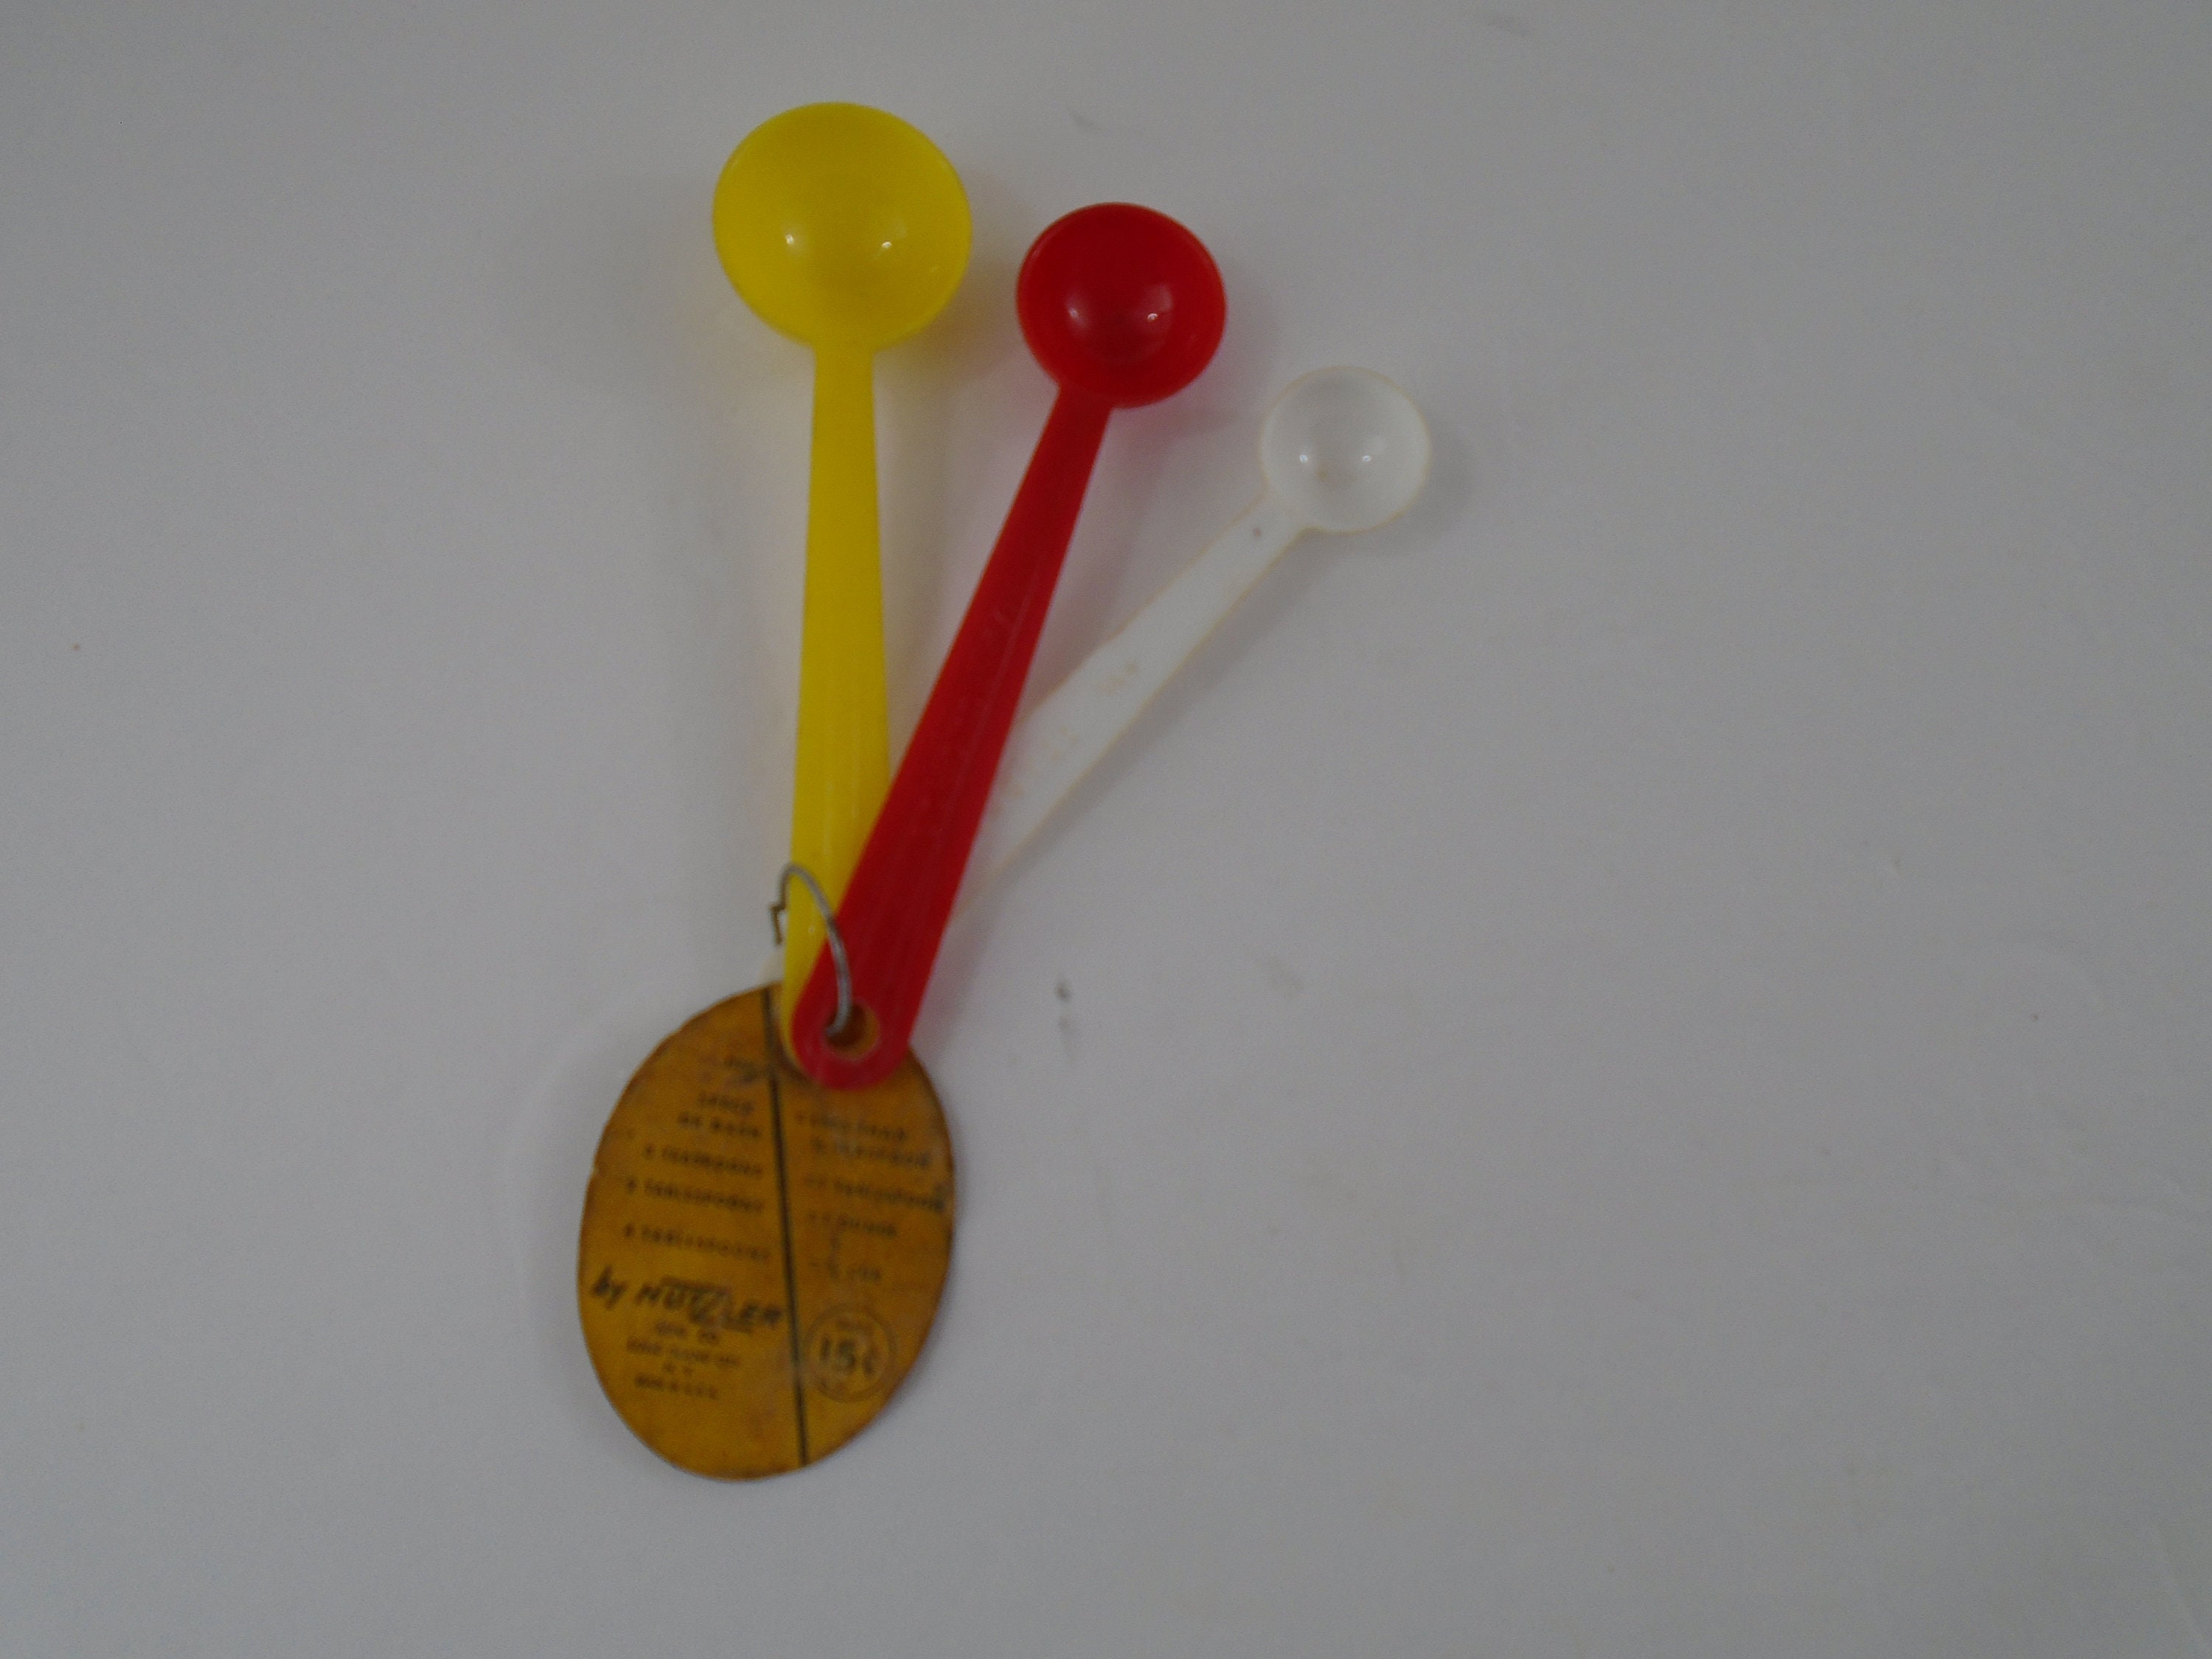 Hutzler Scoop Plastic - 1/4 Cup - Spoons N Spice